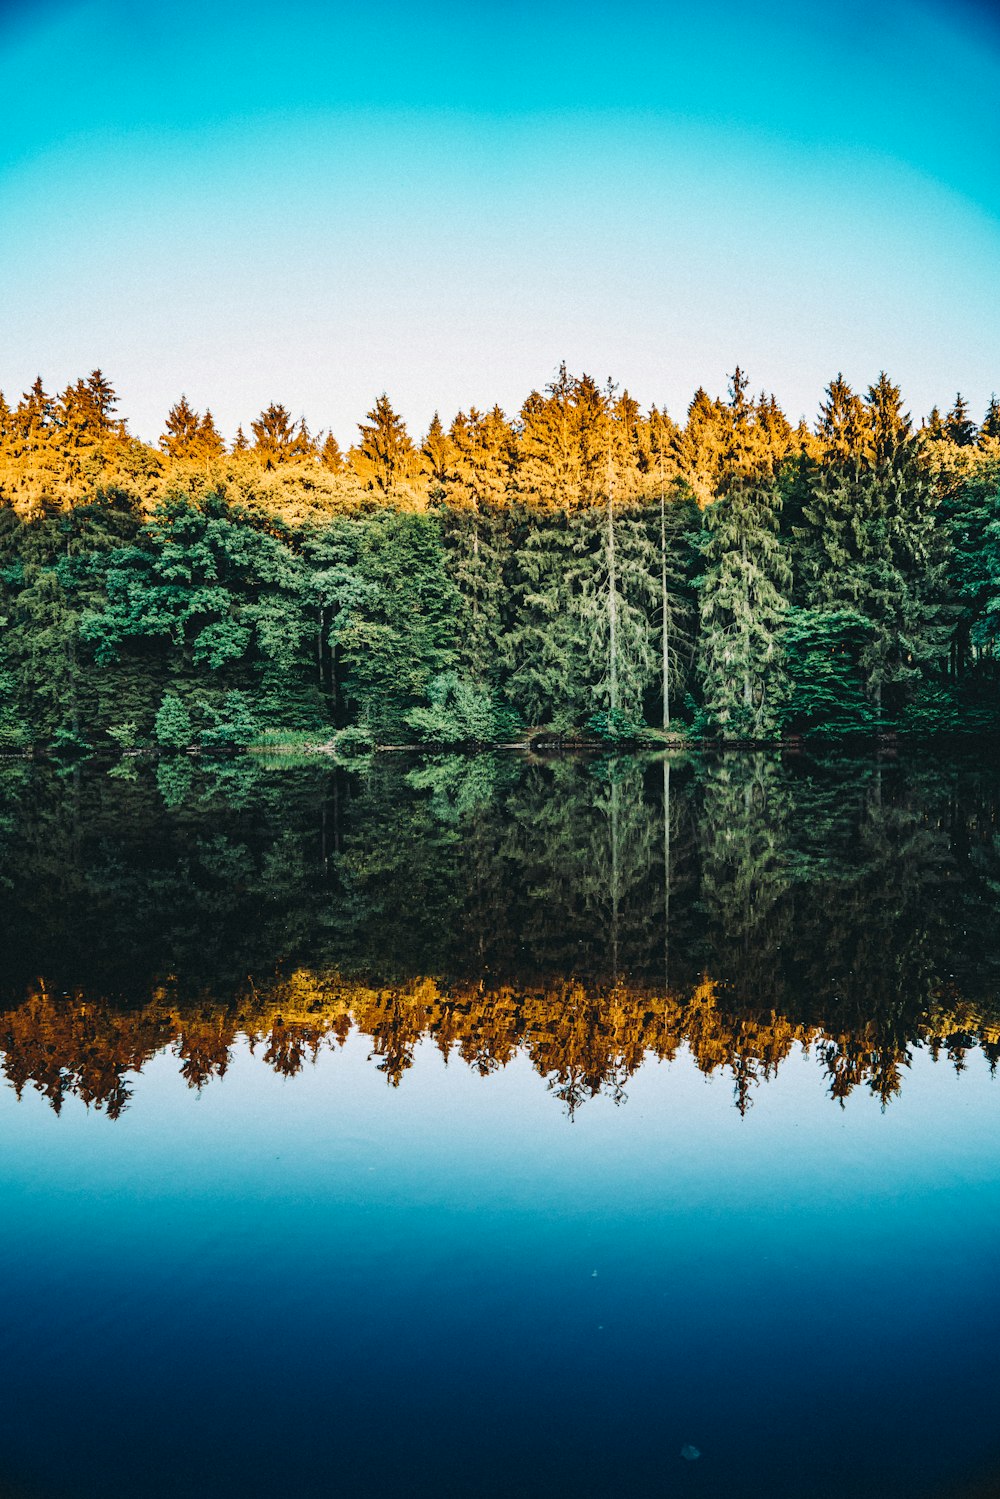 Photographie d’arbres se reflétant sur le plan d’eau sous un ciel bleu clair